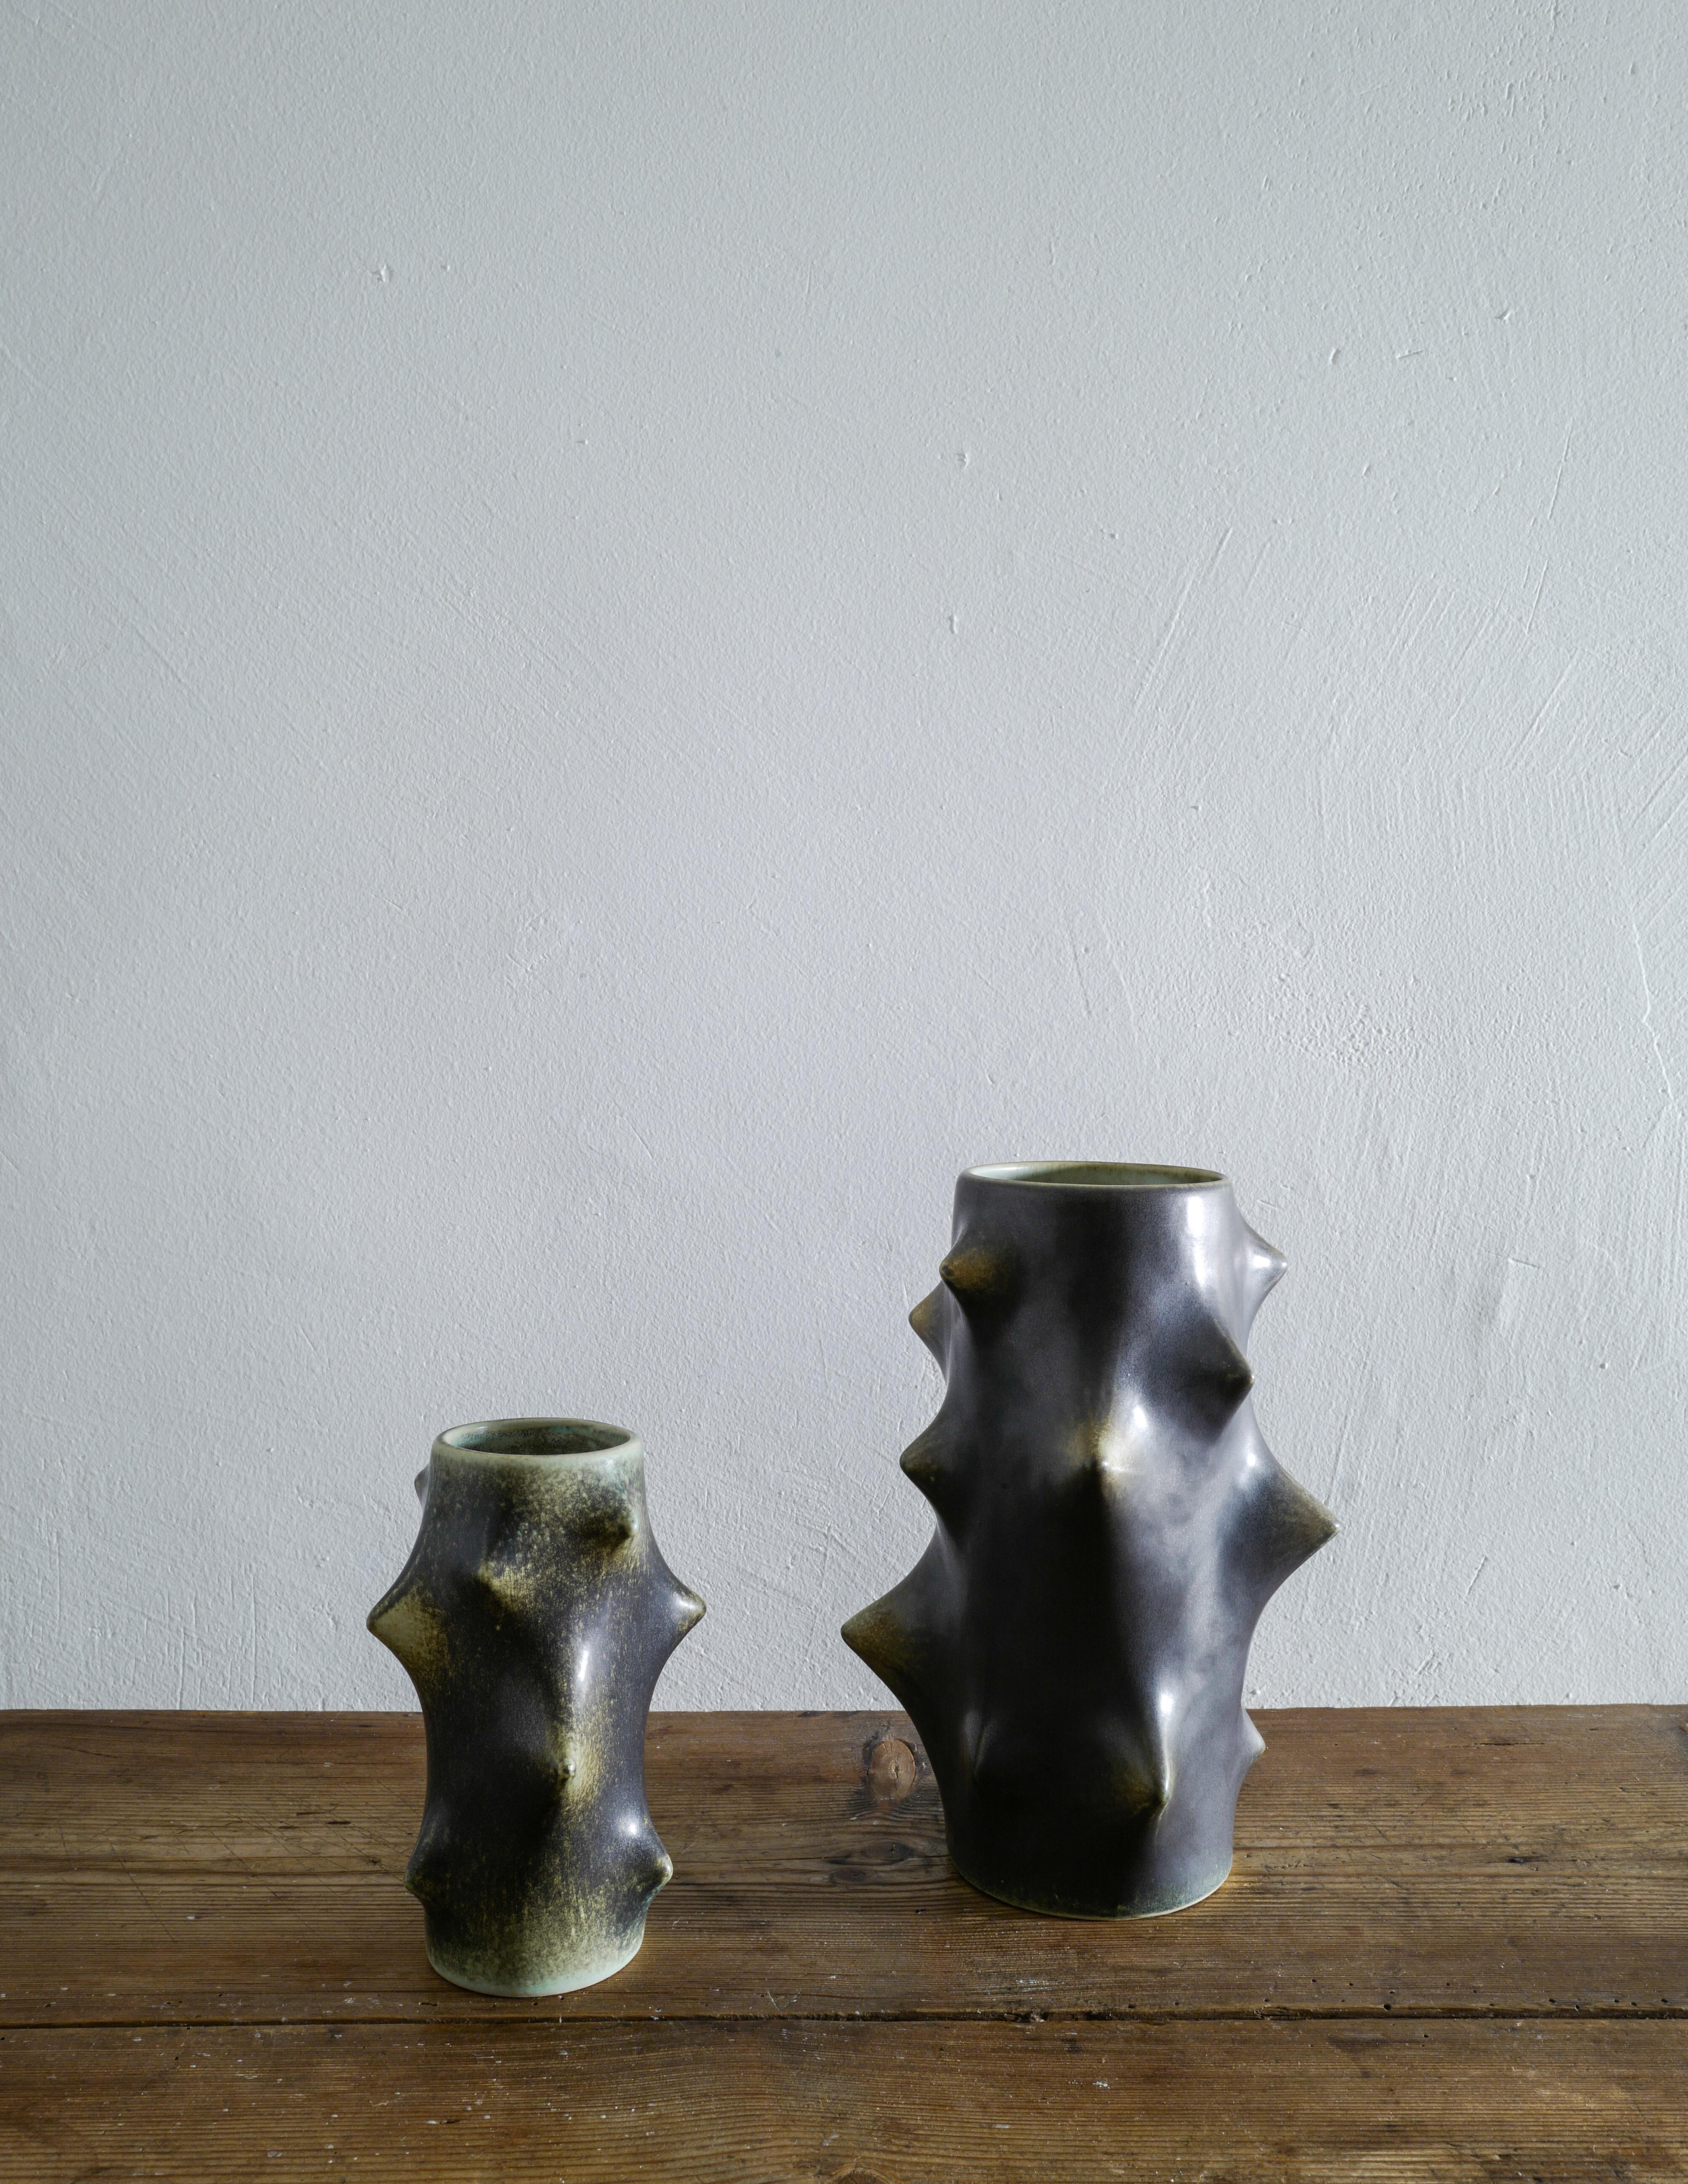 Seltenes Paar Dornenvasen mit dunkelgrüner Glasur, entworfen von Knud Basse und hergestellt von Michael Andersen, Dänemark. Beide Vasen sind in gutem Vintage-Zustand mit kleinen Gebrauchsspuren und signiert / markiert am Boden. 

Abmessungen: